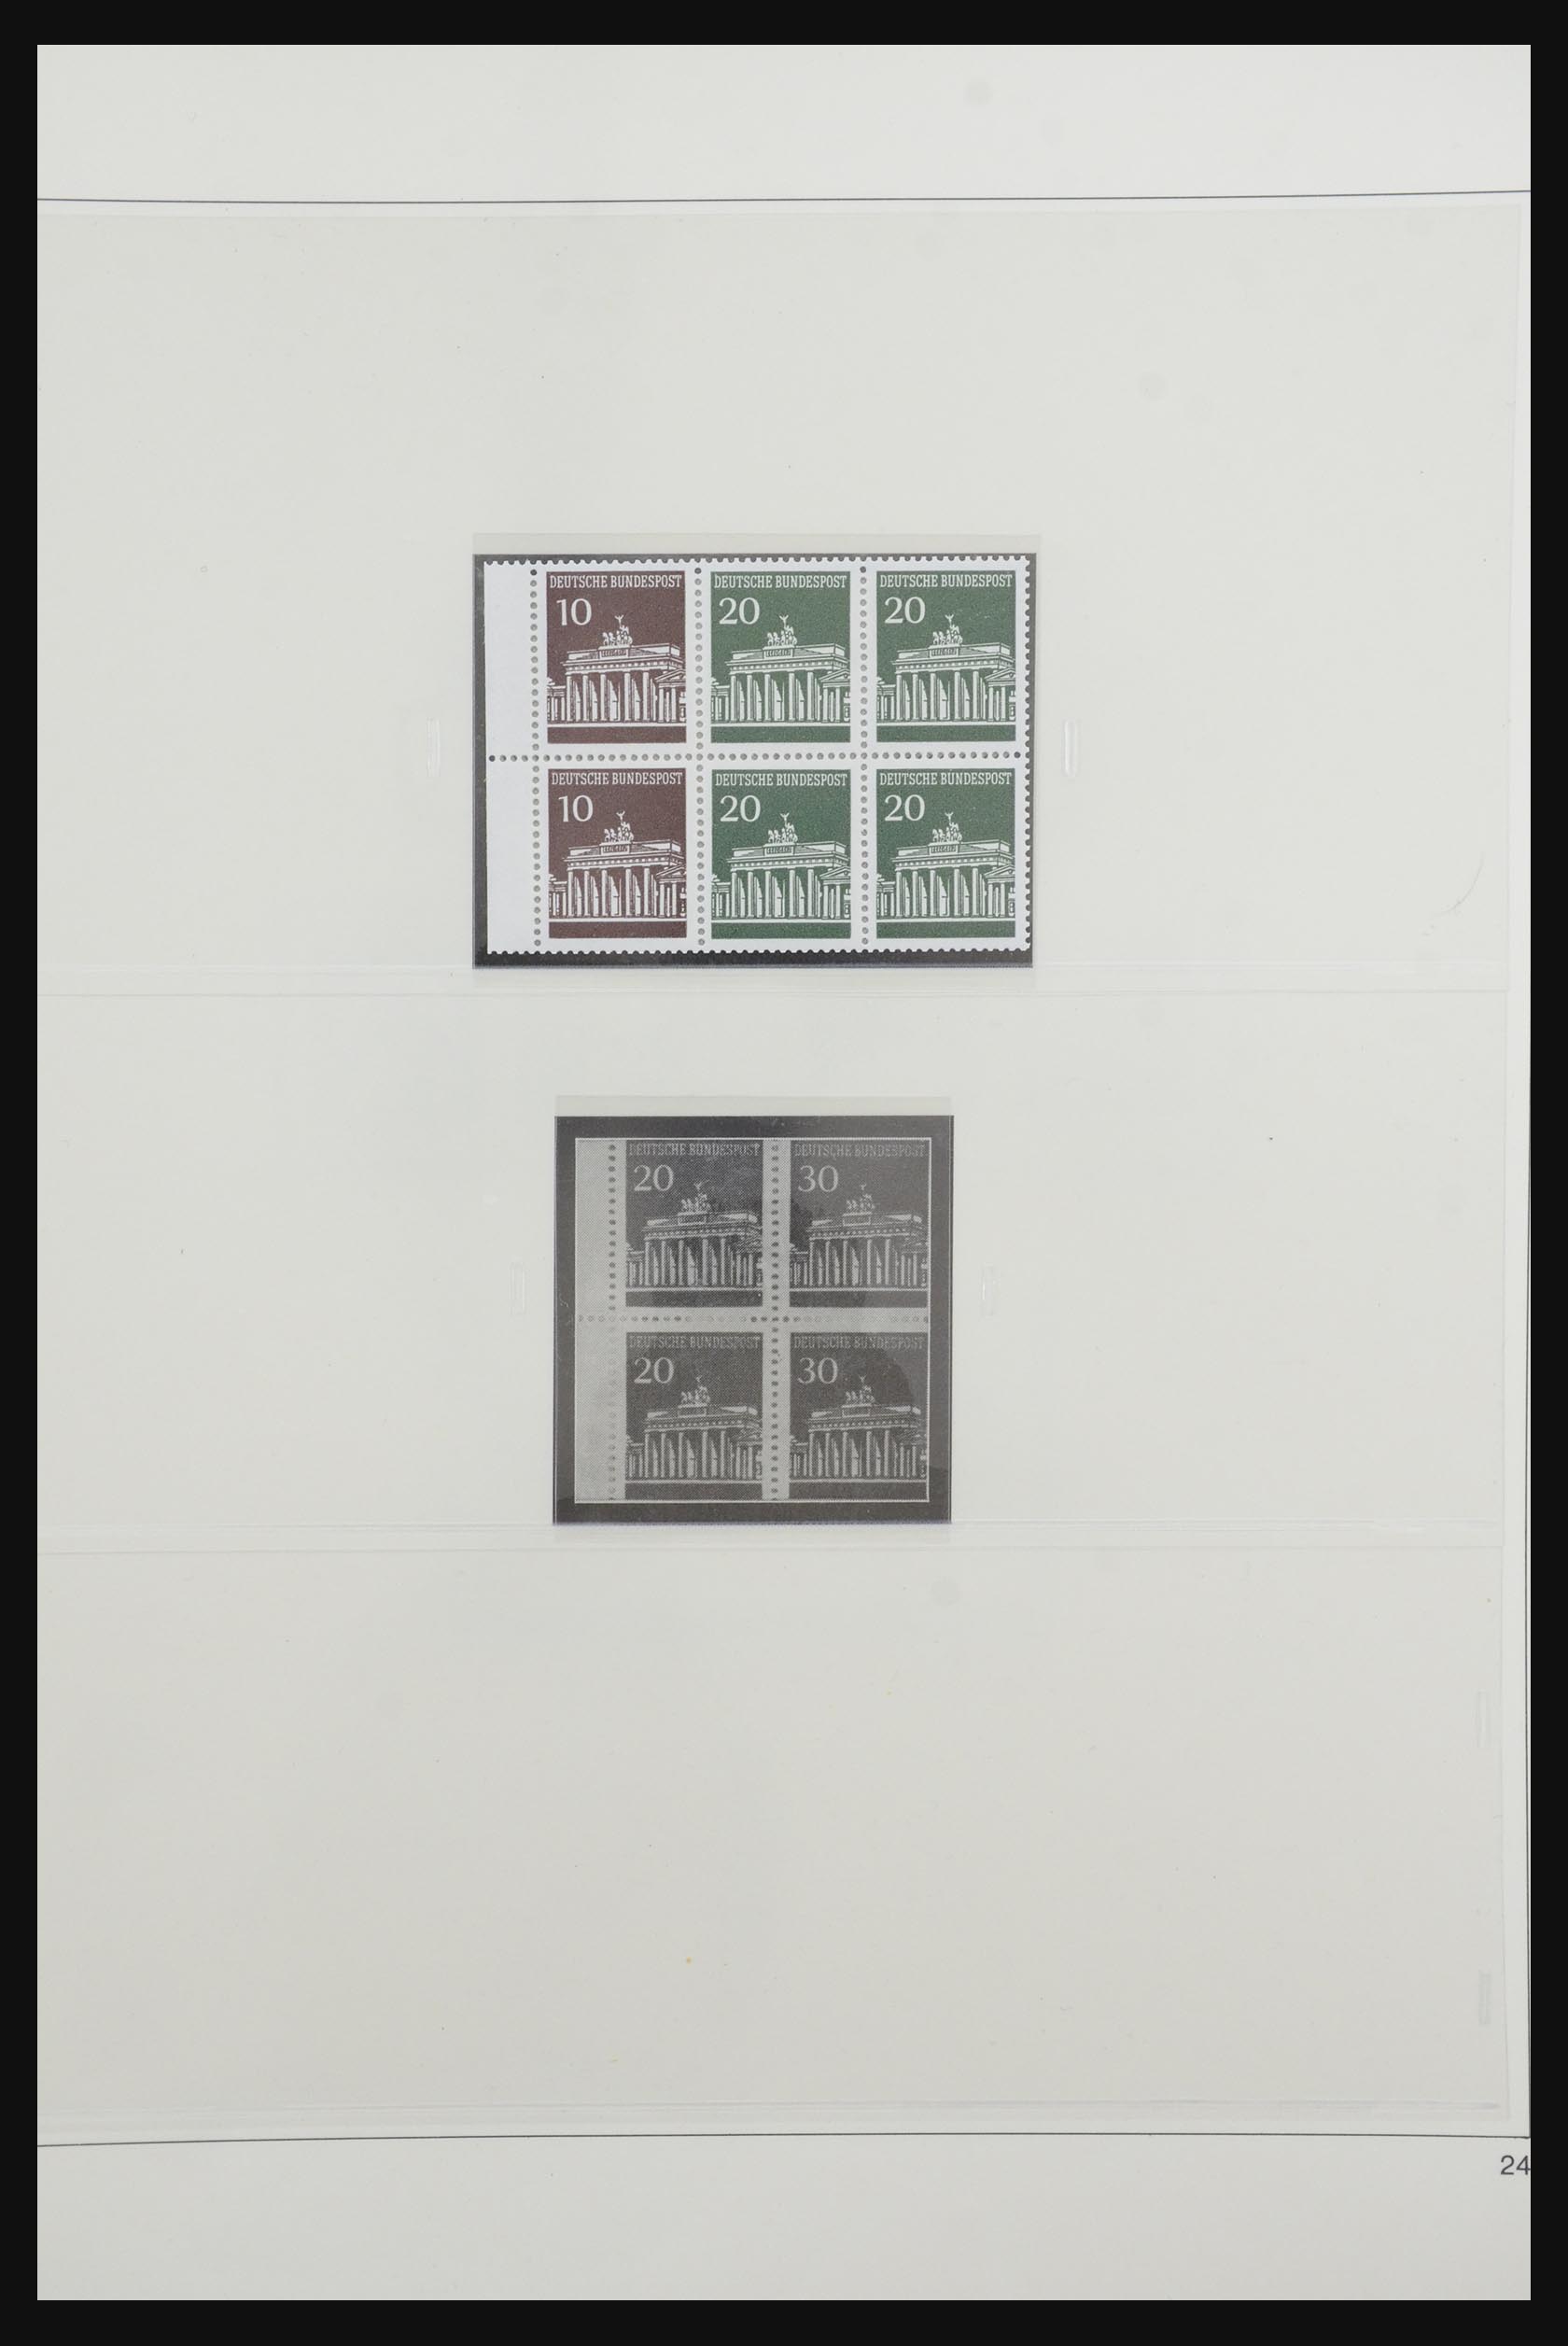 31842 033 - 31842 Bundespost combinaties 1951-2003.